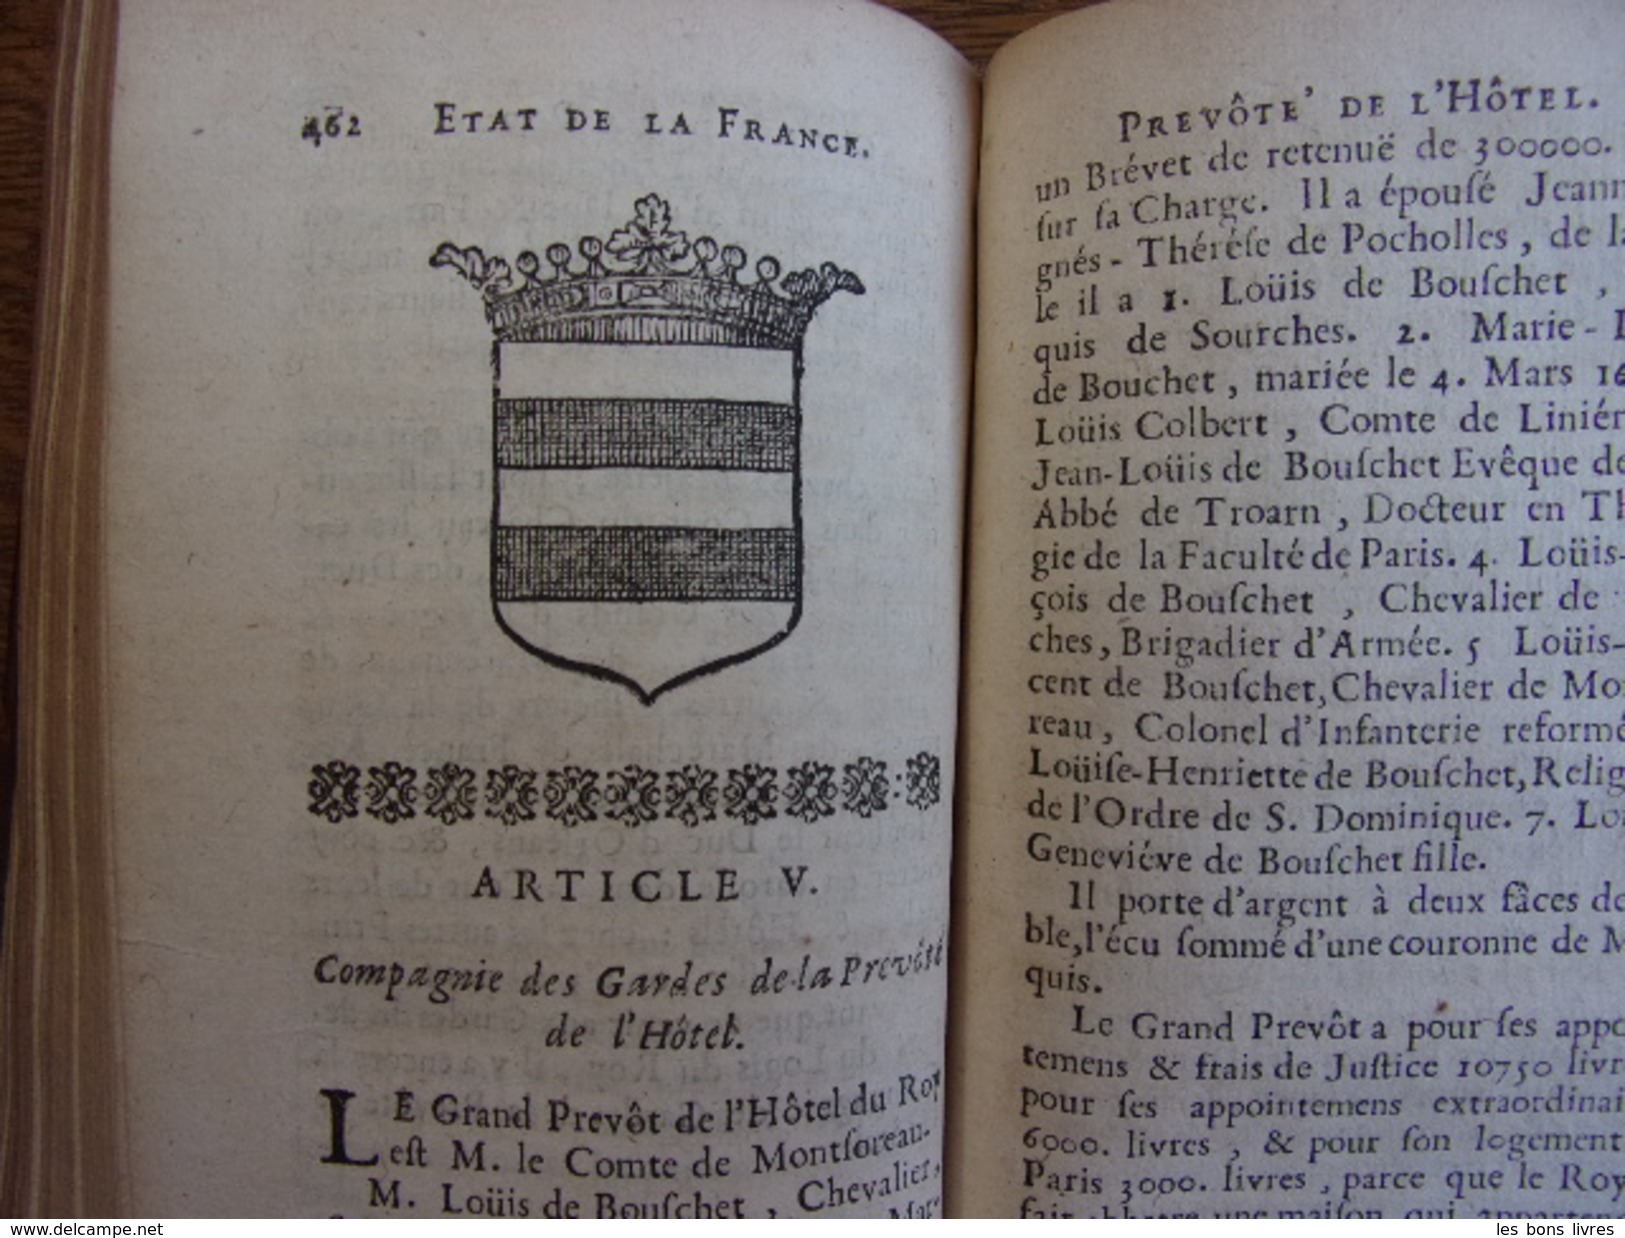 L’ÉTAT DE LA FRANCE Princes, Ducs & Pairs avec Blasons 1718